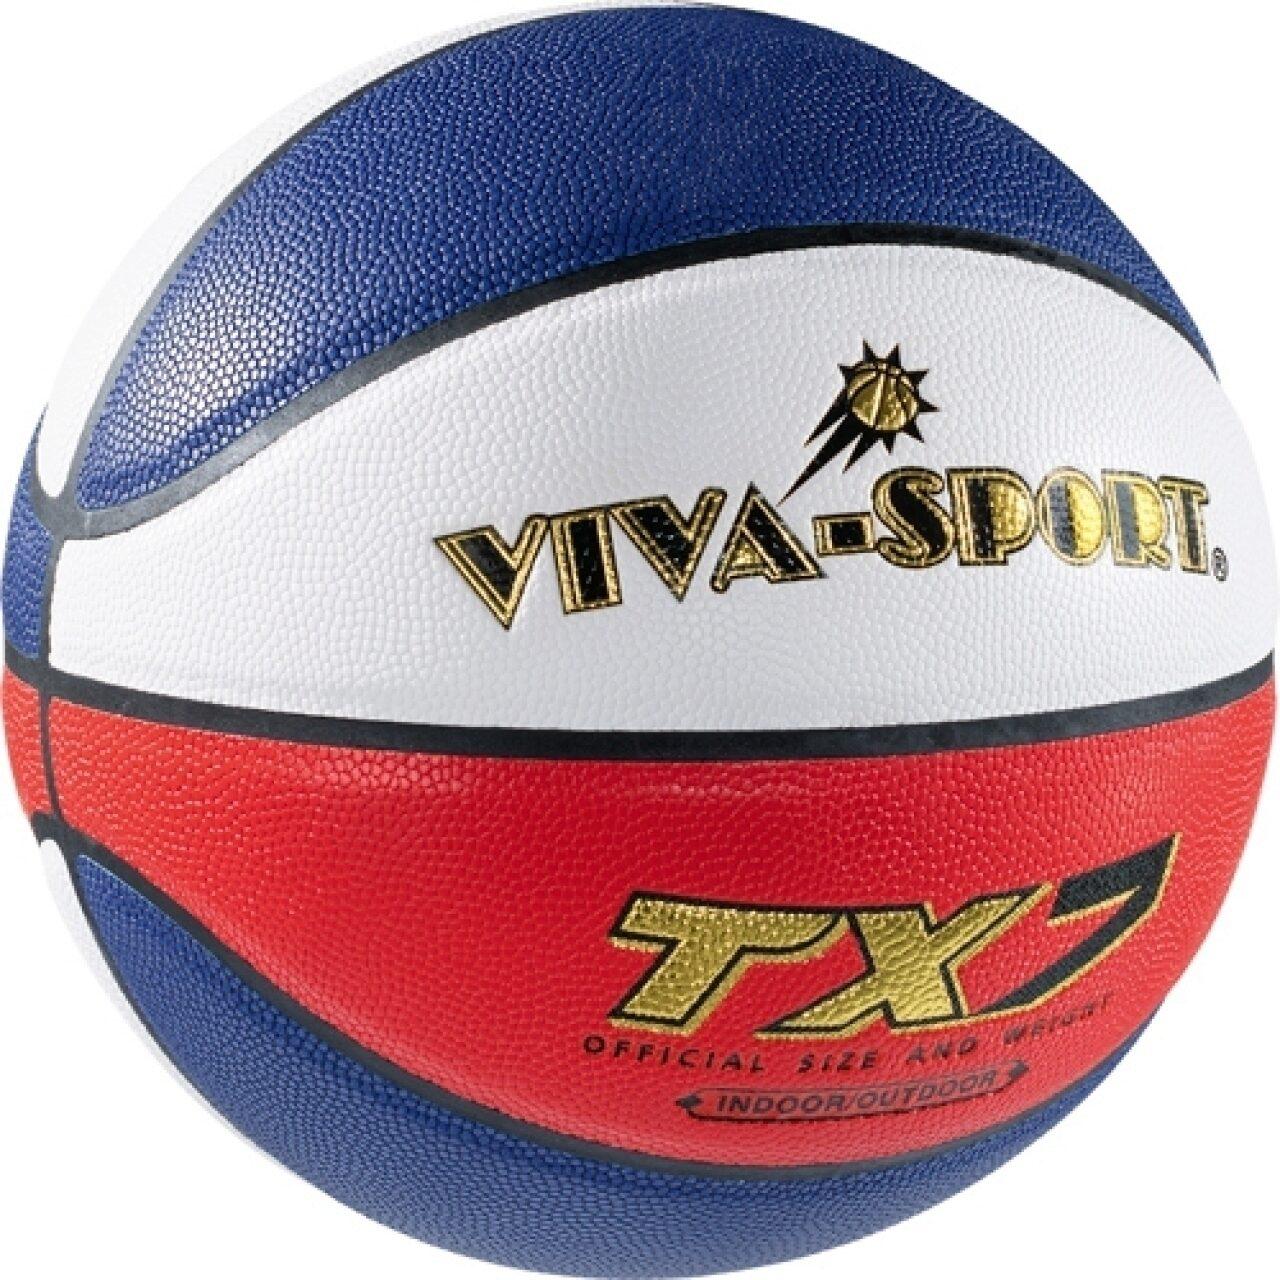 VIVA SPORT - Basketball "Money TX7"